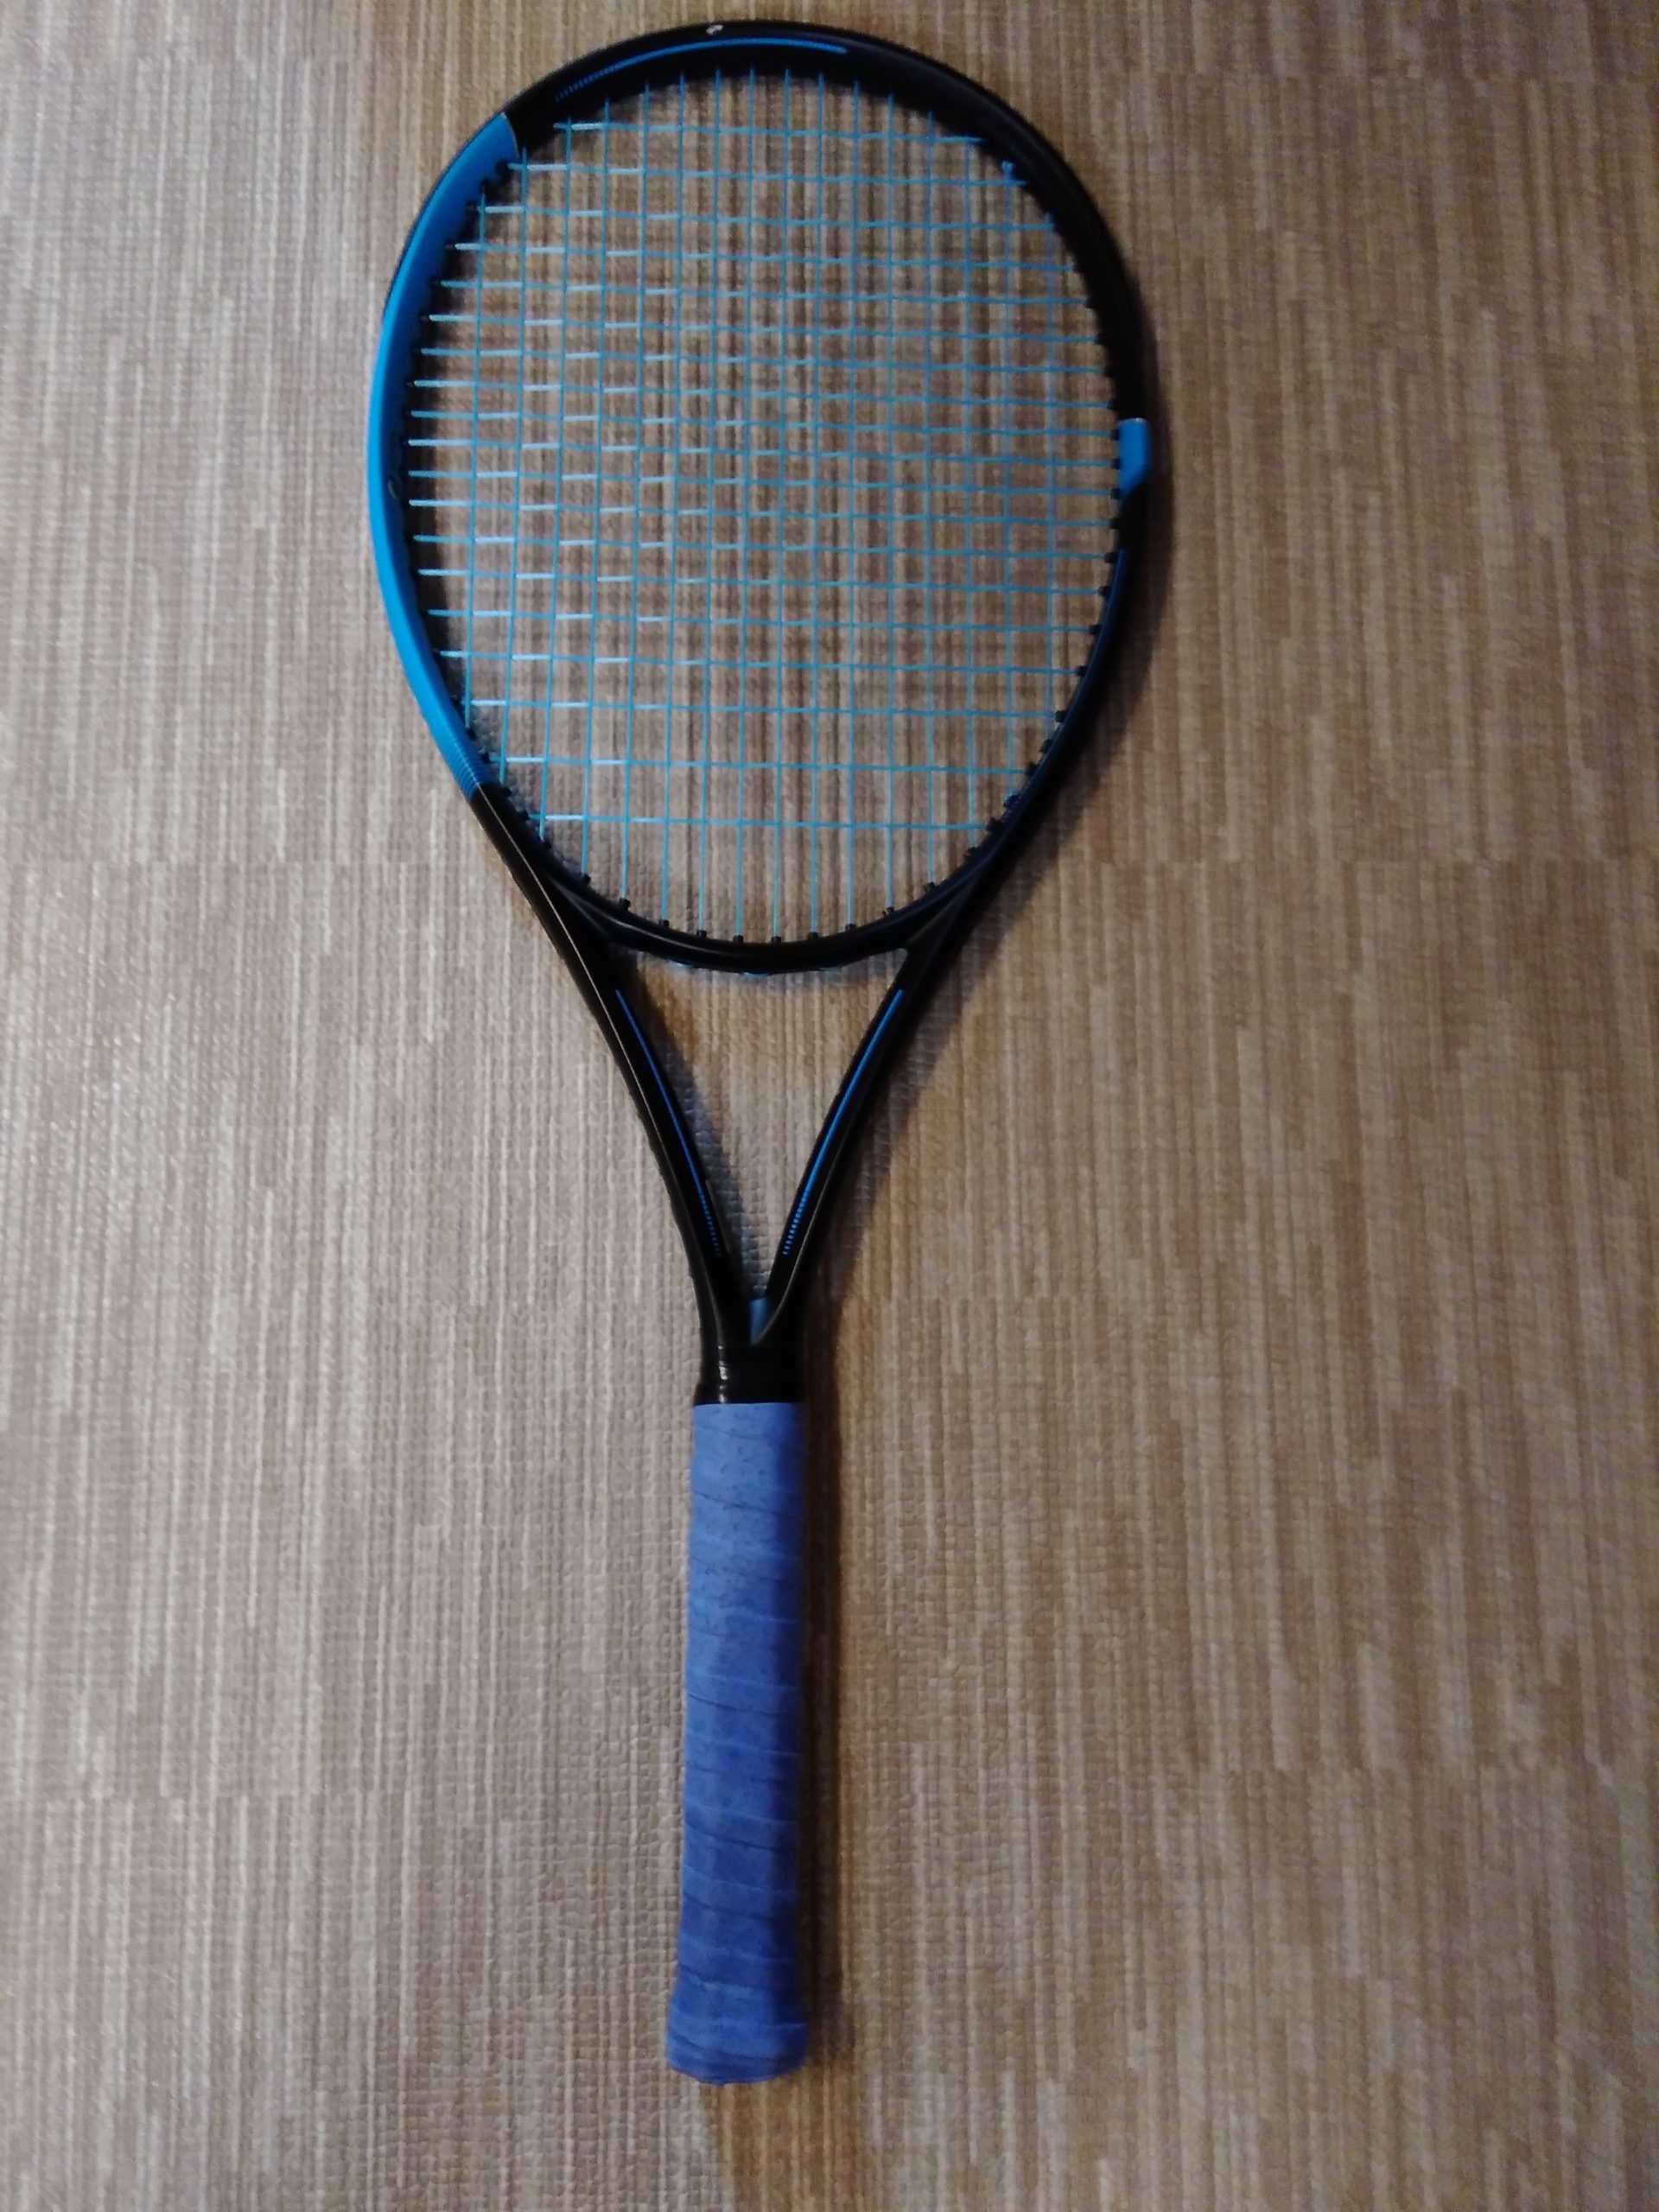 17288円 買い物 ダンロップ FX 500 LS テニスラケット